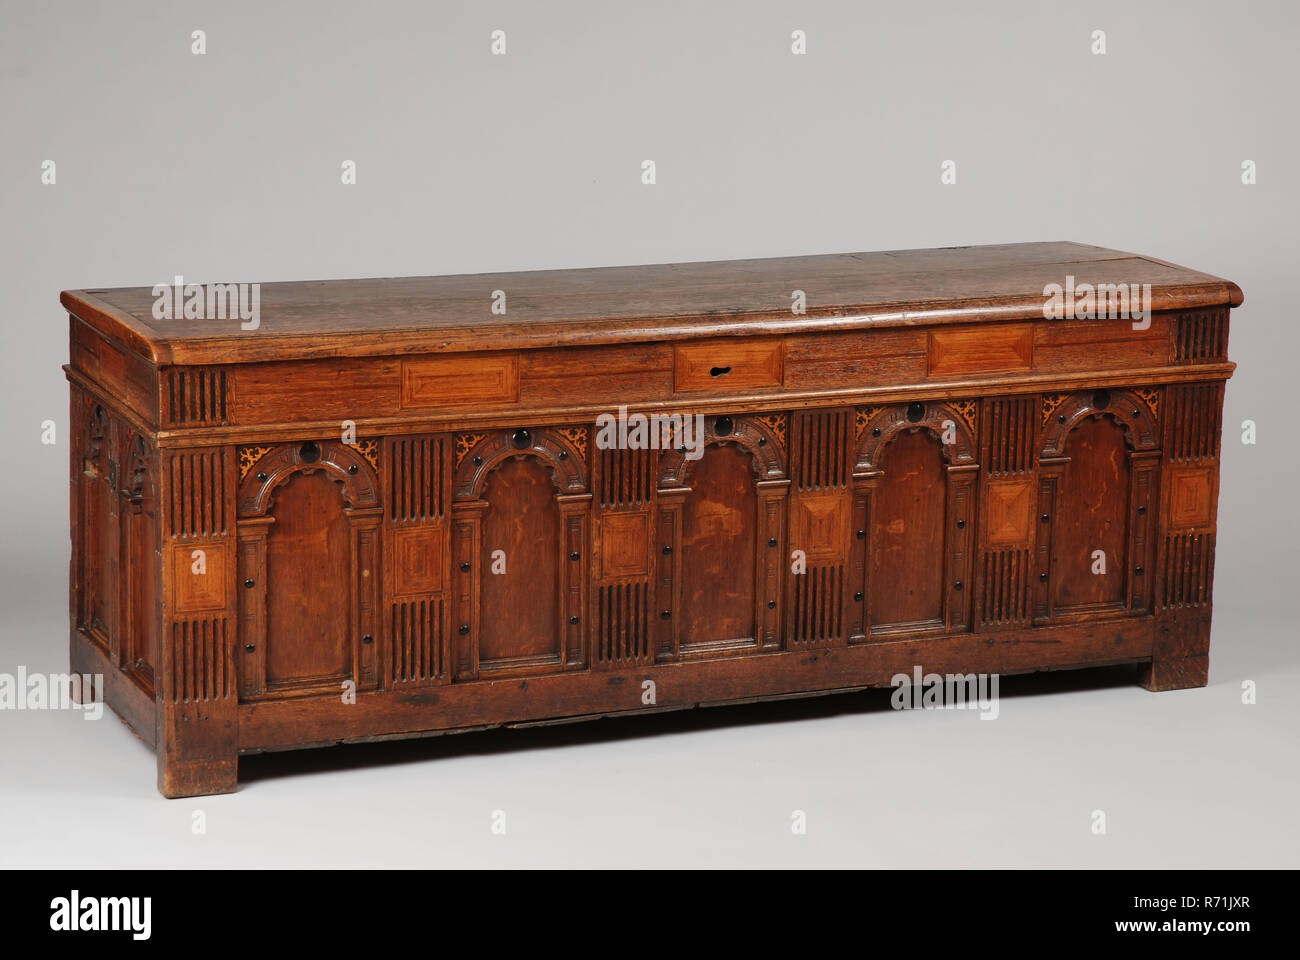 Oak Box Coffin Cupboard Furniture Furniture Interior Design